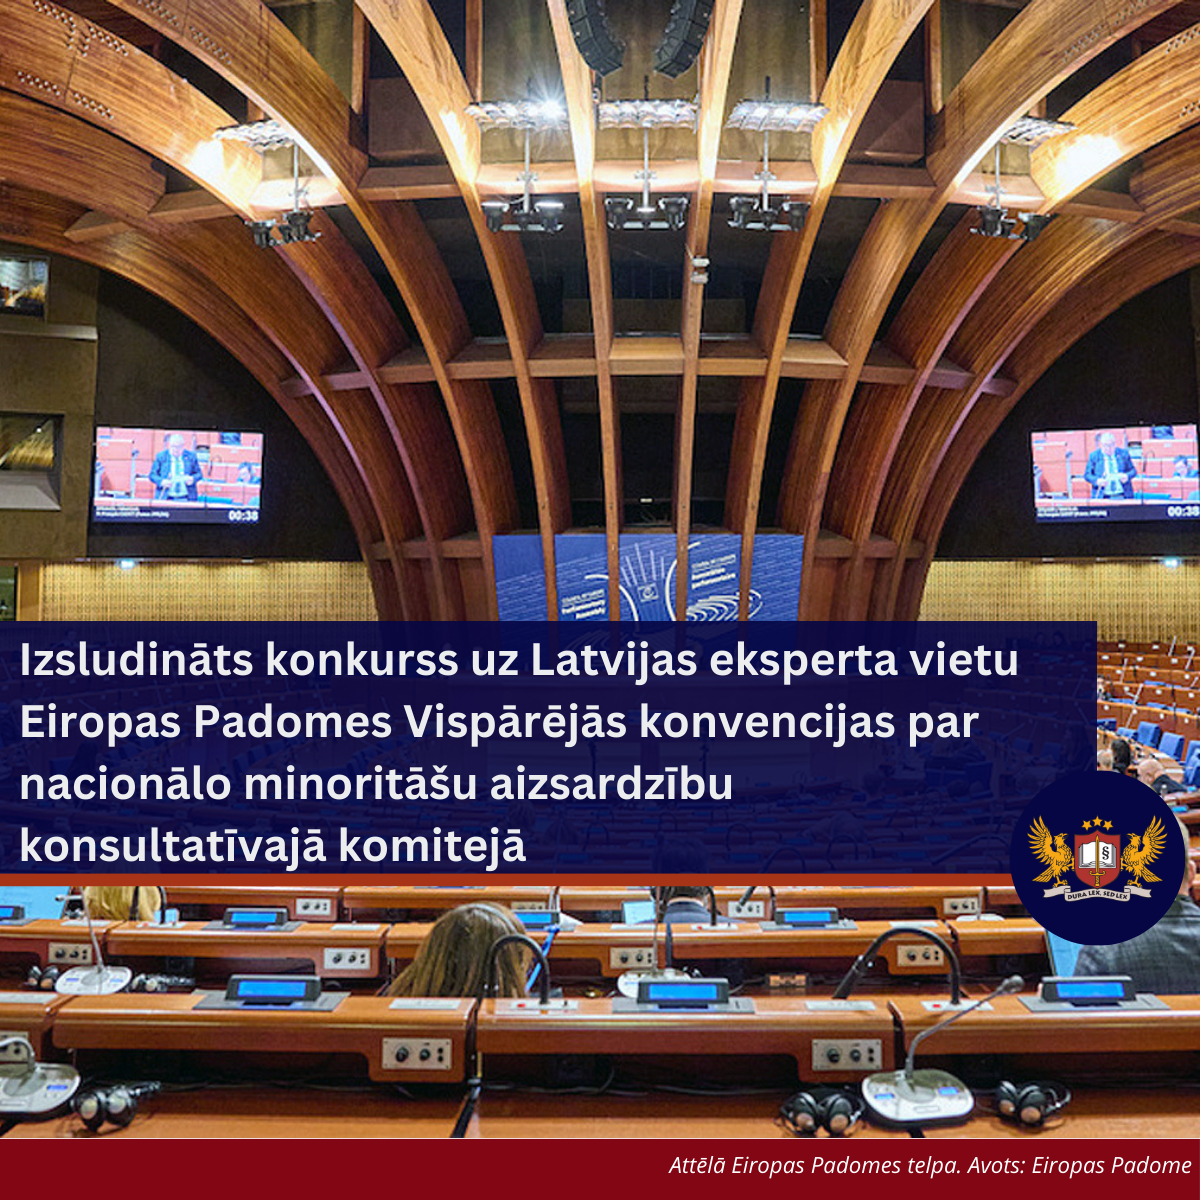 Pagarināts pieteikšanās termiņš konkursam uz Latvijas eksperta vietu Eiropas Padomes Vispārējās konvencijas par nacionālo minoritāšu aizsardzību konsultatīvajā komitejā